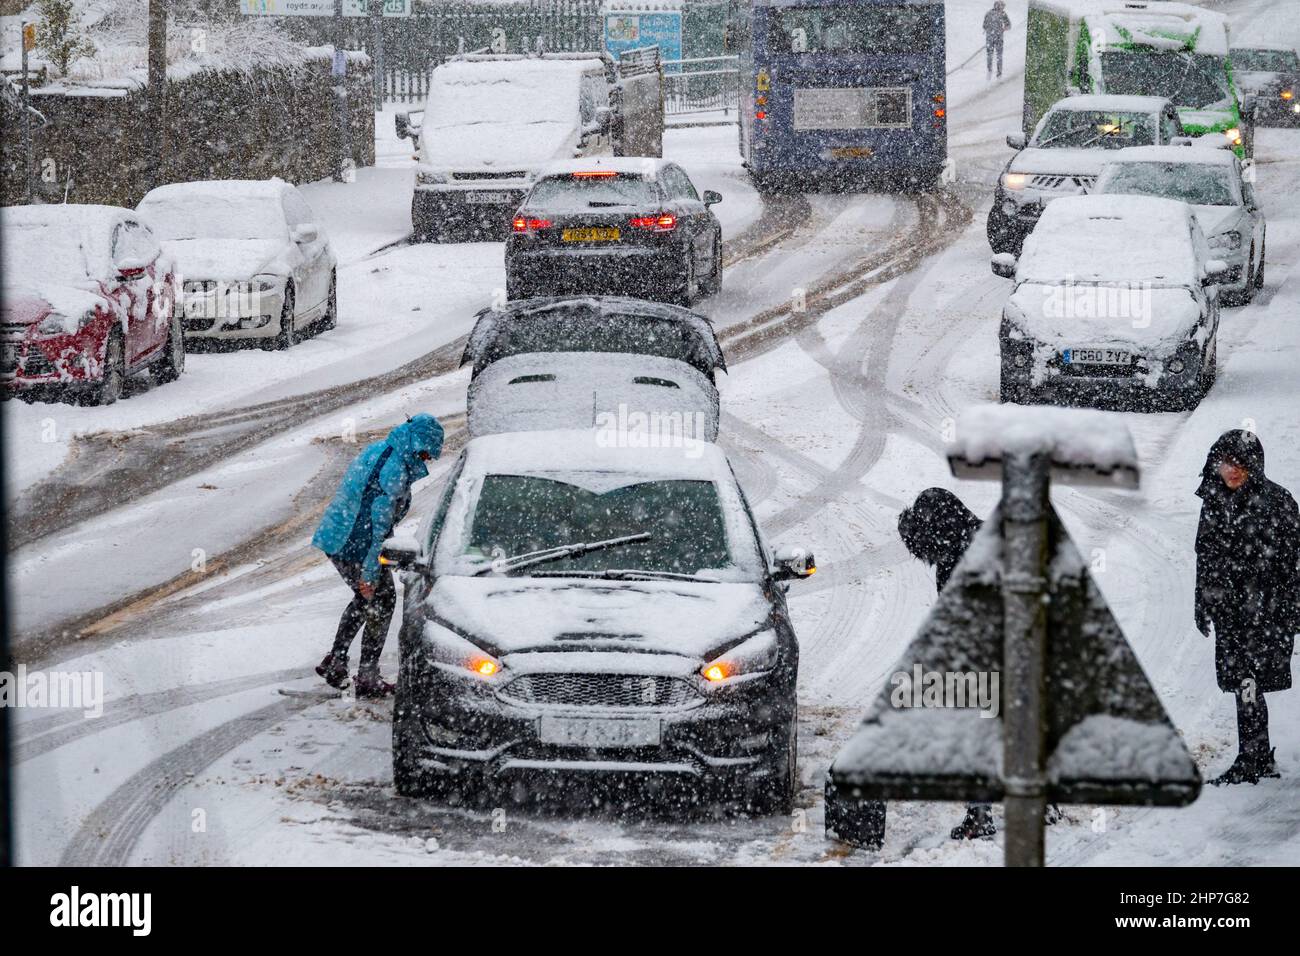 Neve e ghiaccio che causano disagi sulle colline intorno a Bradford, West Yorkshire, Regno Unito. 19th Feb 2022. Le auto lottano per muoversi su superfici invernali scivolose. Le donne cercano di liberare le ruote su una collina nevosa per far muovere la loro auto. Foto Stock